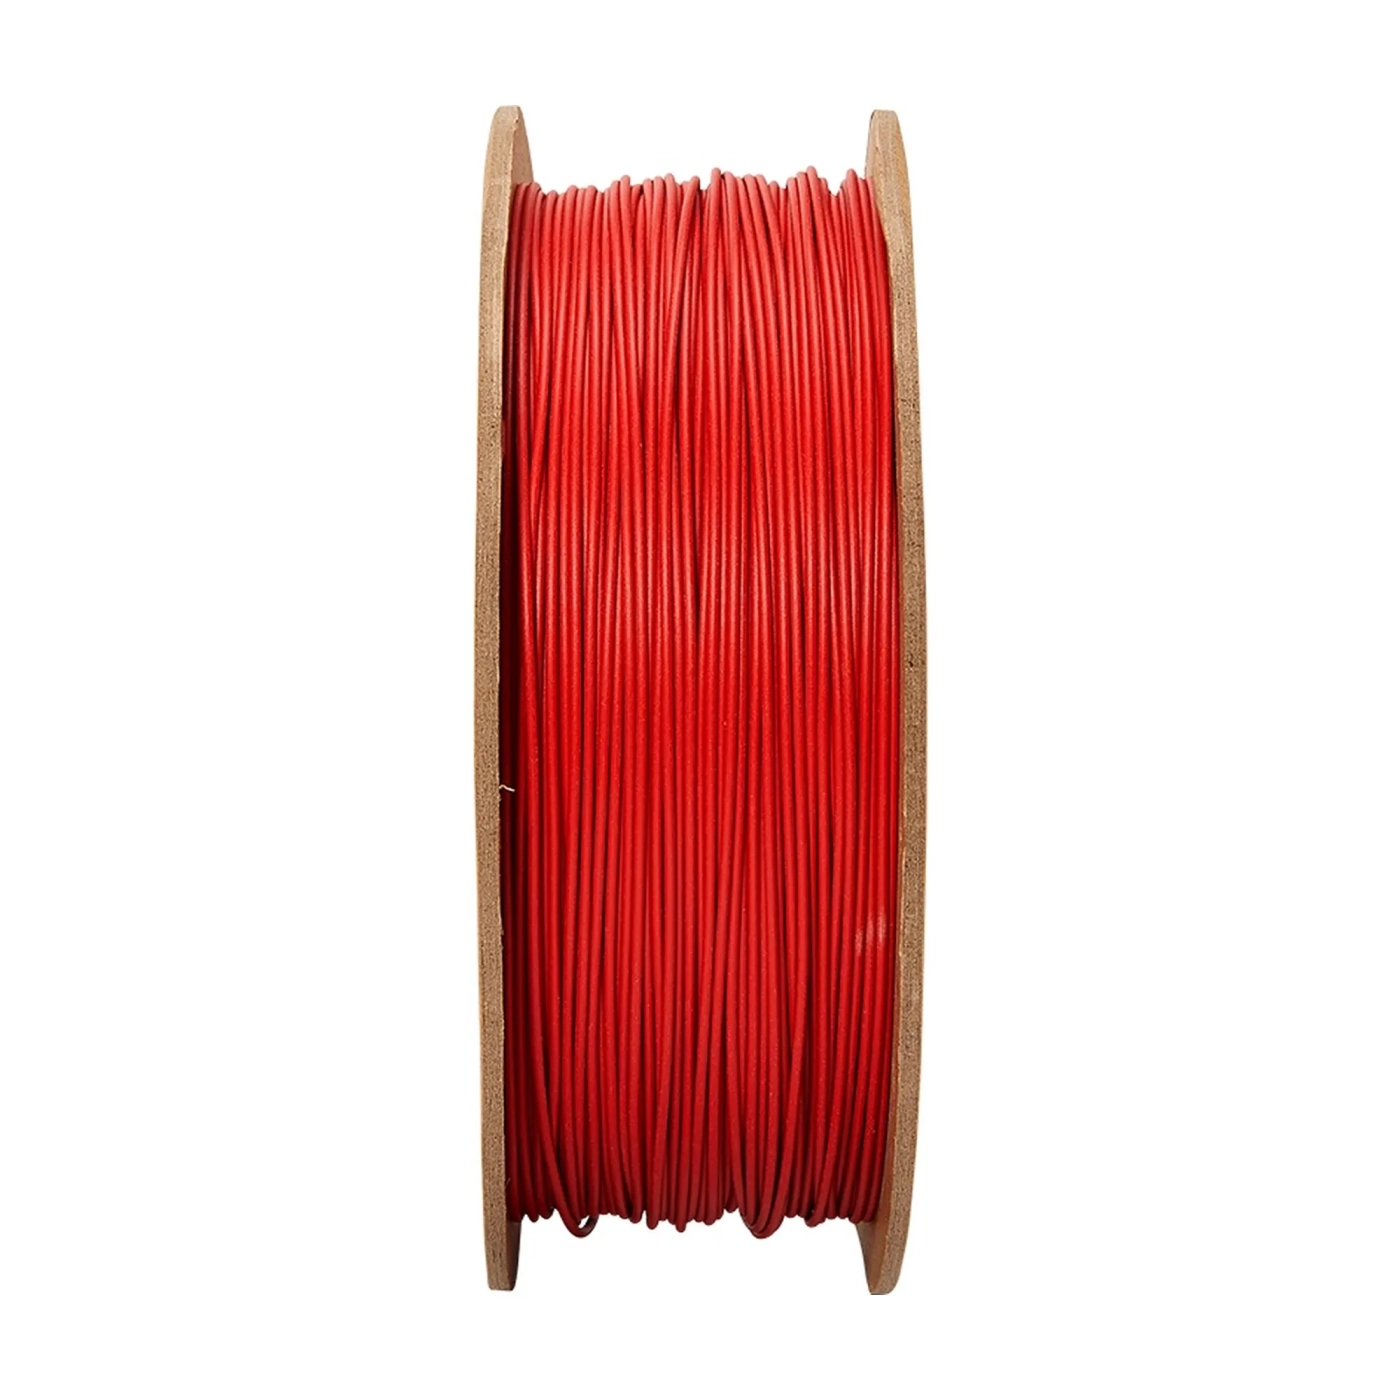 Купити PolyTerra PLA Filament (пластик) для 3D принтера Polymaker 1кг, 1.75мм, армійський червоний - фото 2